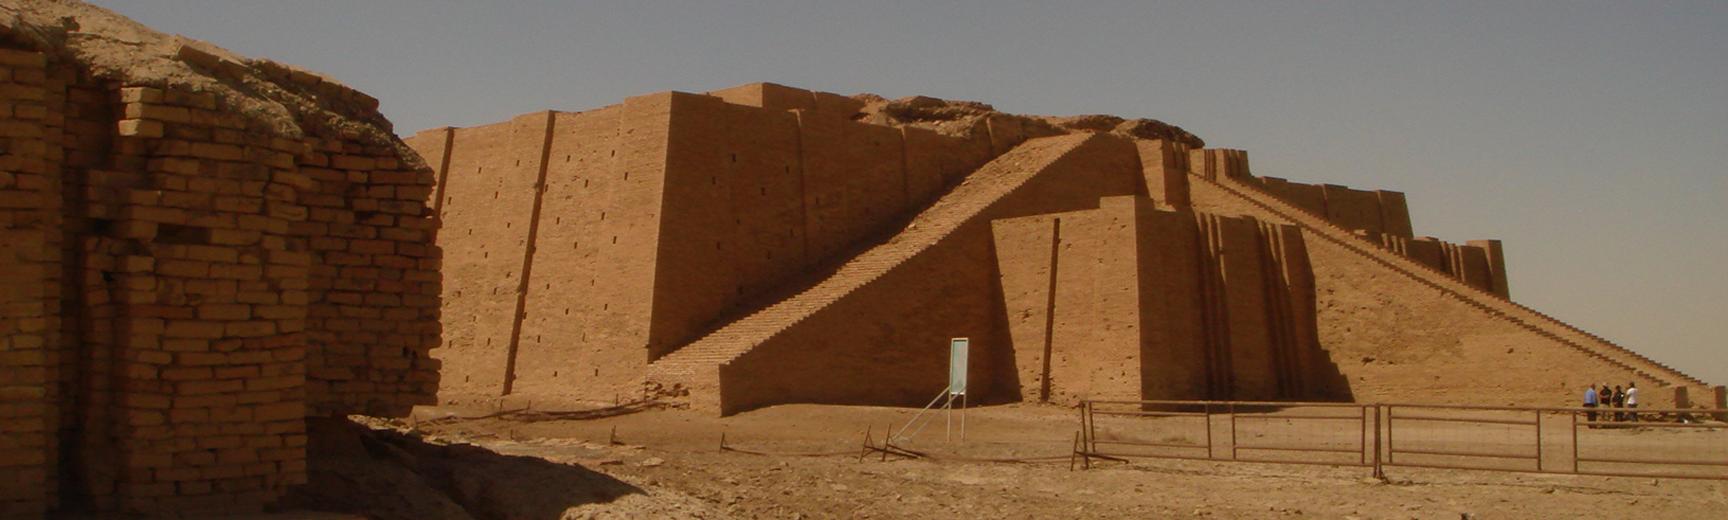 The ziggurat at Ur Southern Iraq